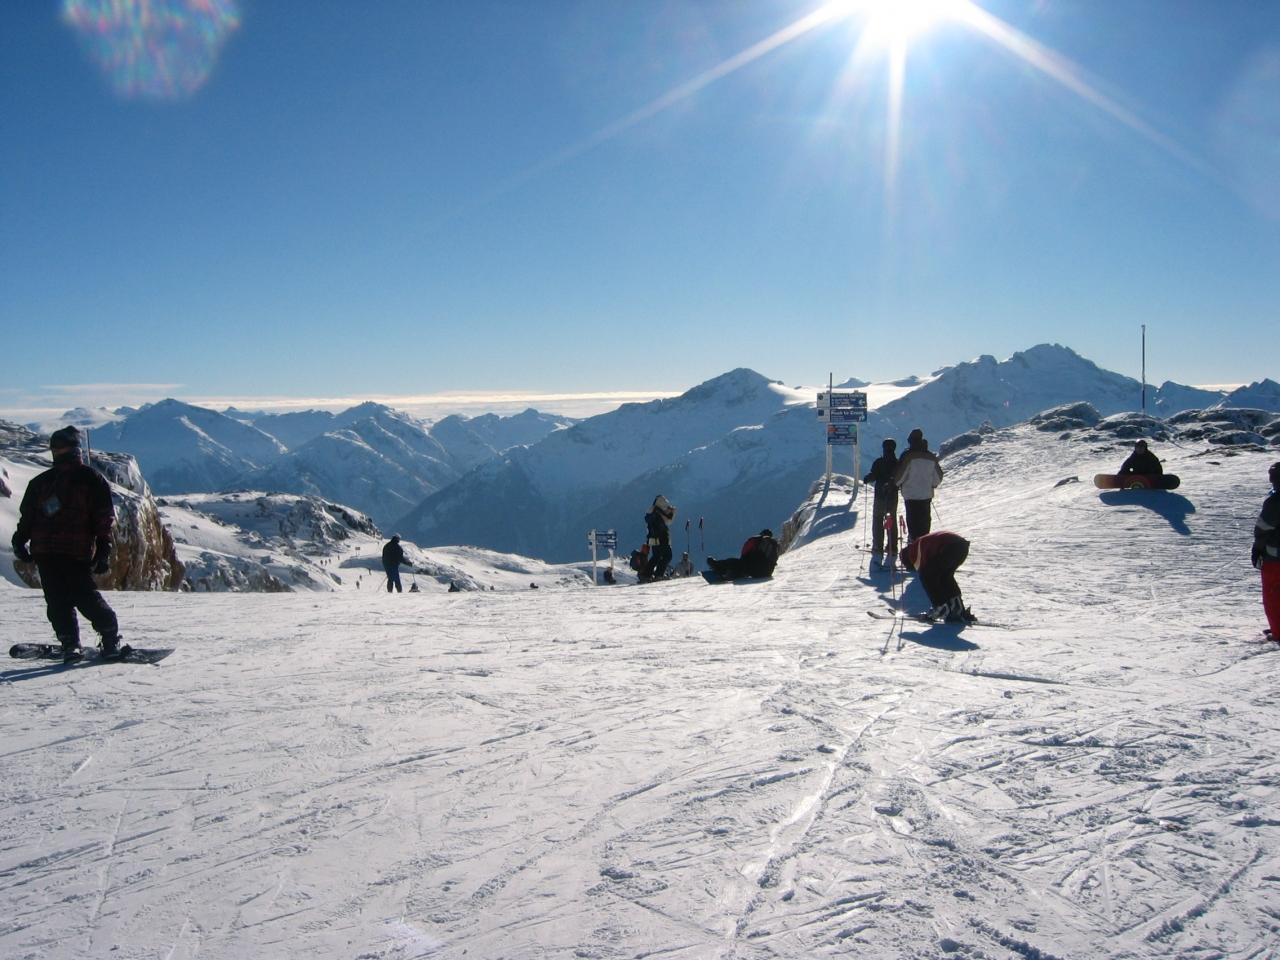 やったー 夢のウィスラーでスキー三昧 ウィスラー カナダ の旅行記 ブログ By Bostonianさん フォートラベル